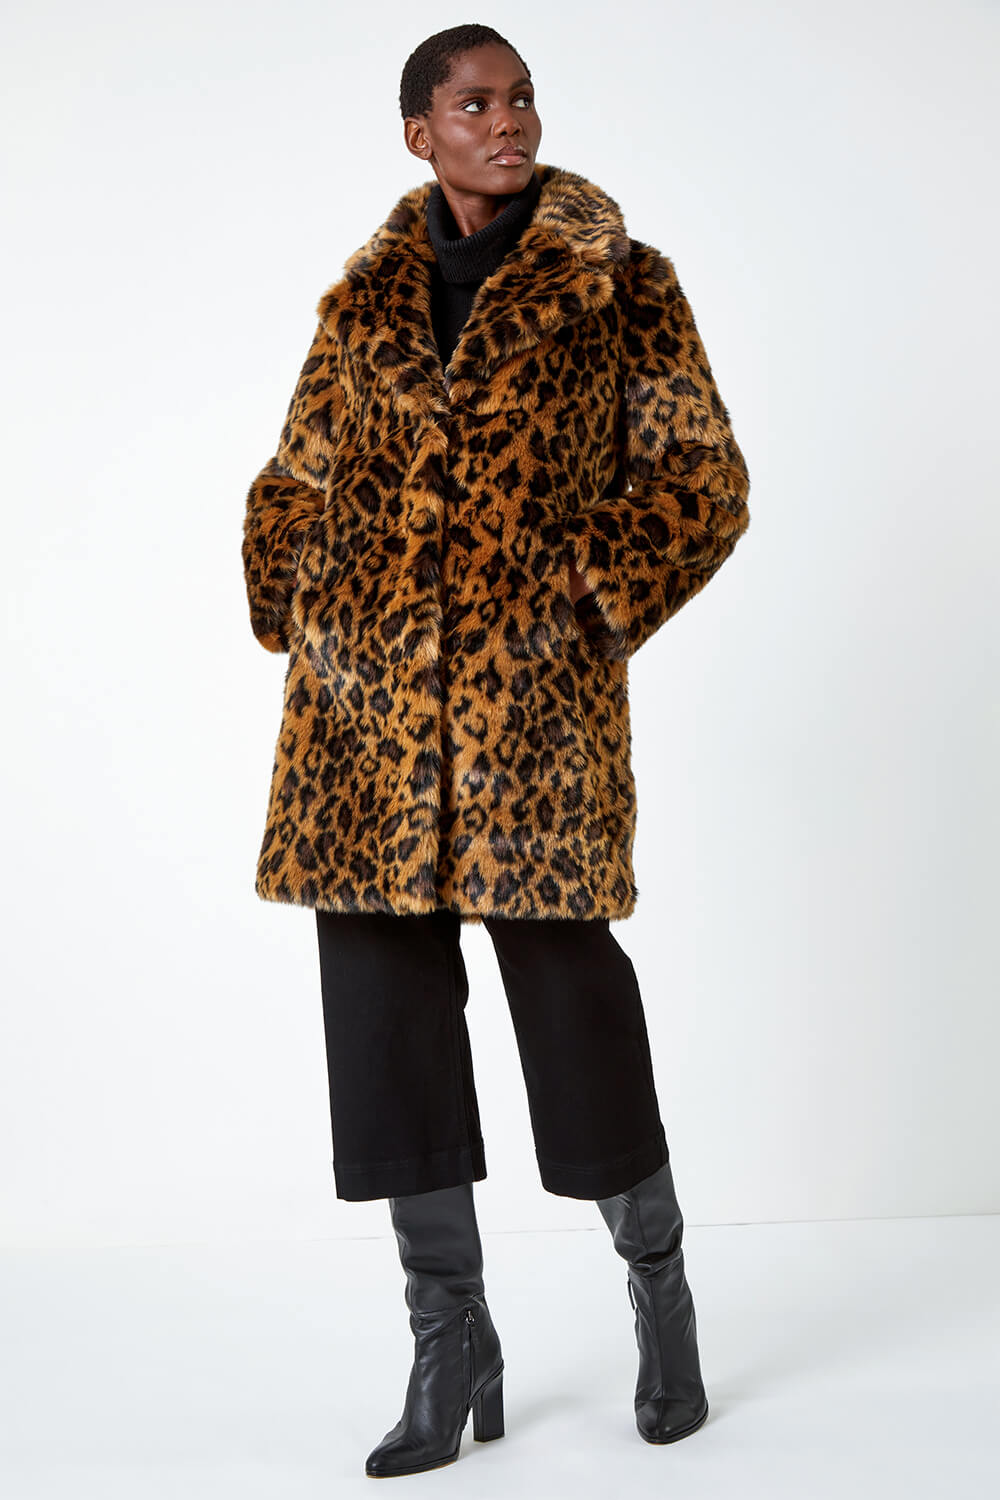 Tan Premium Animal Print Faux Fur Coat, Image 2 of 5